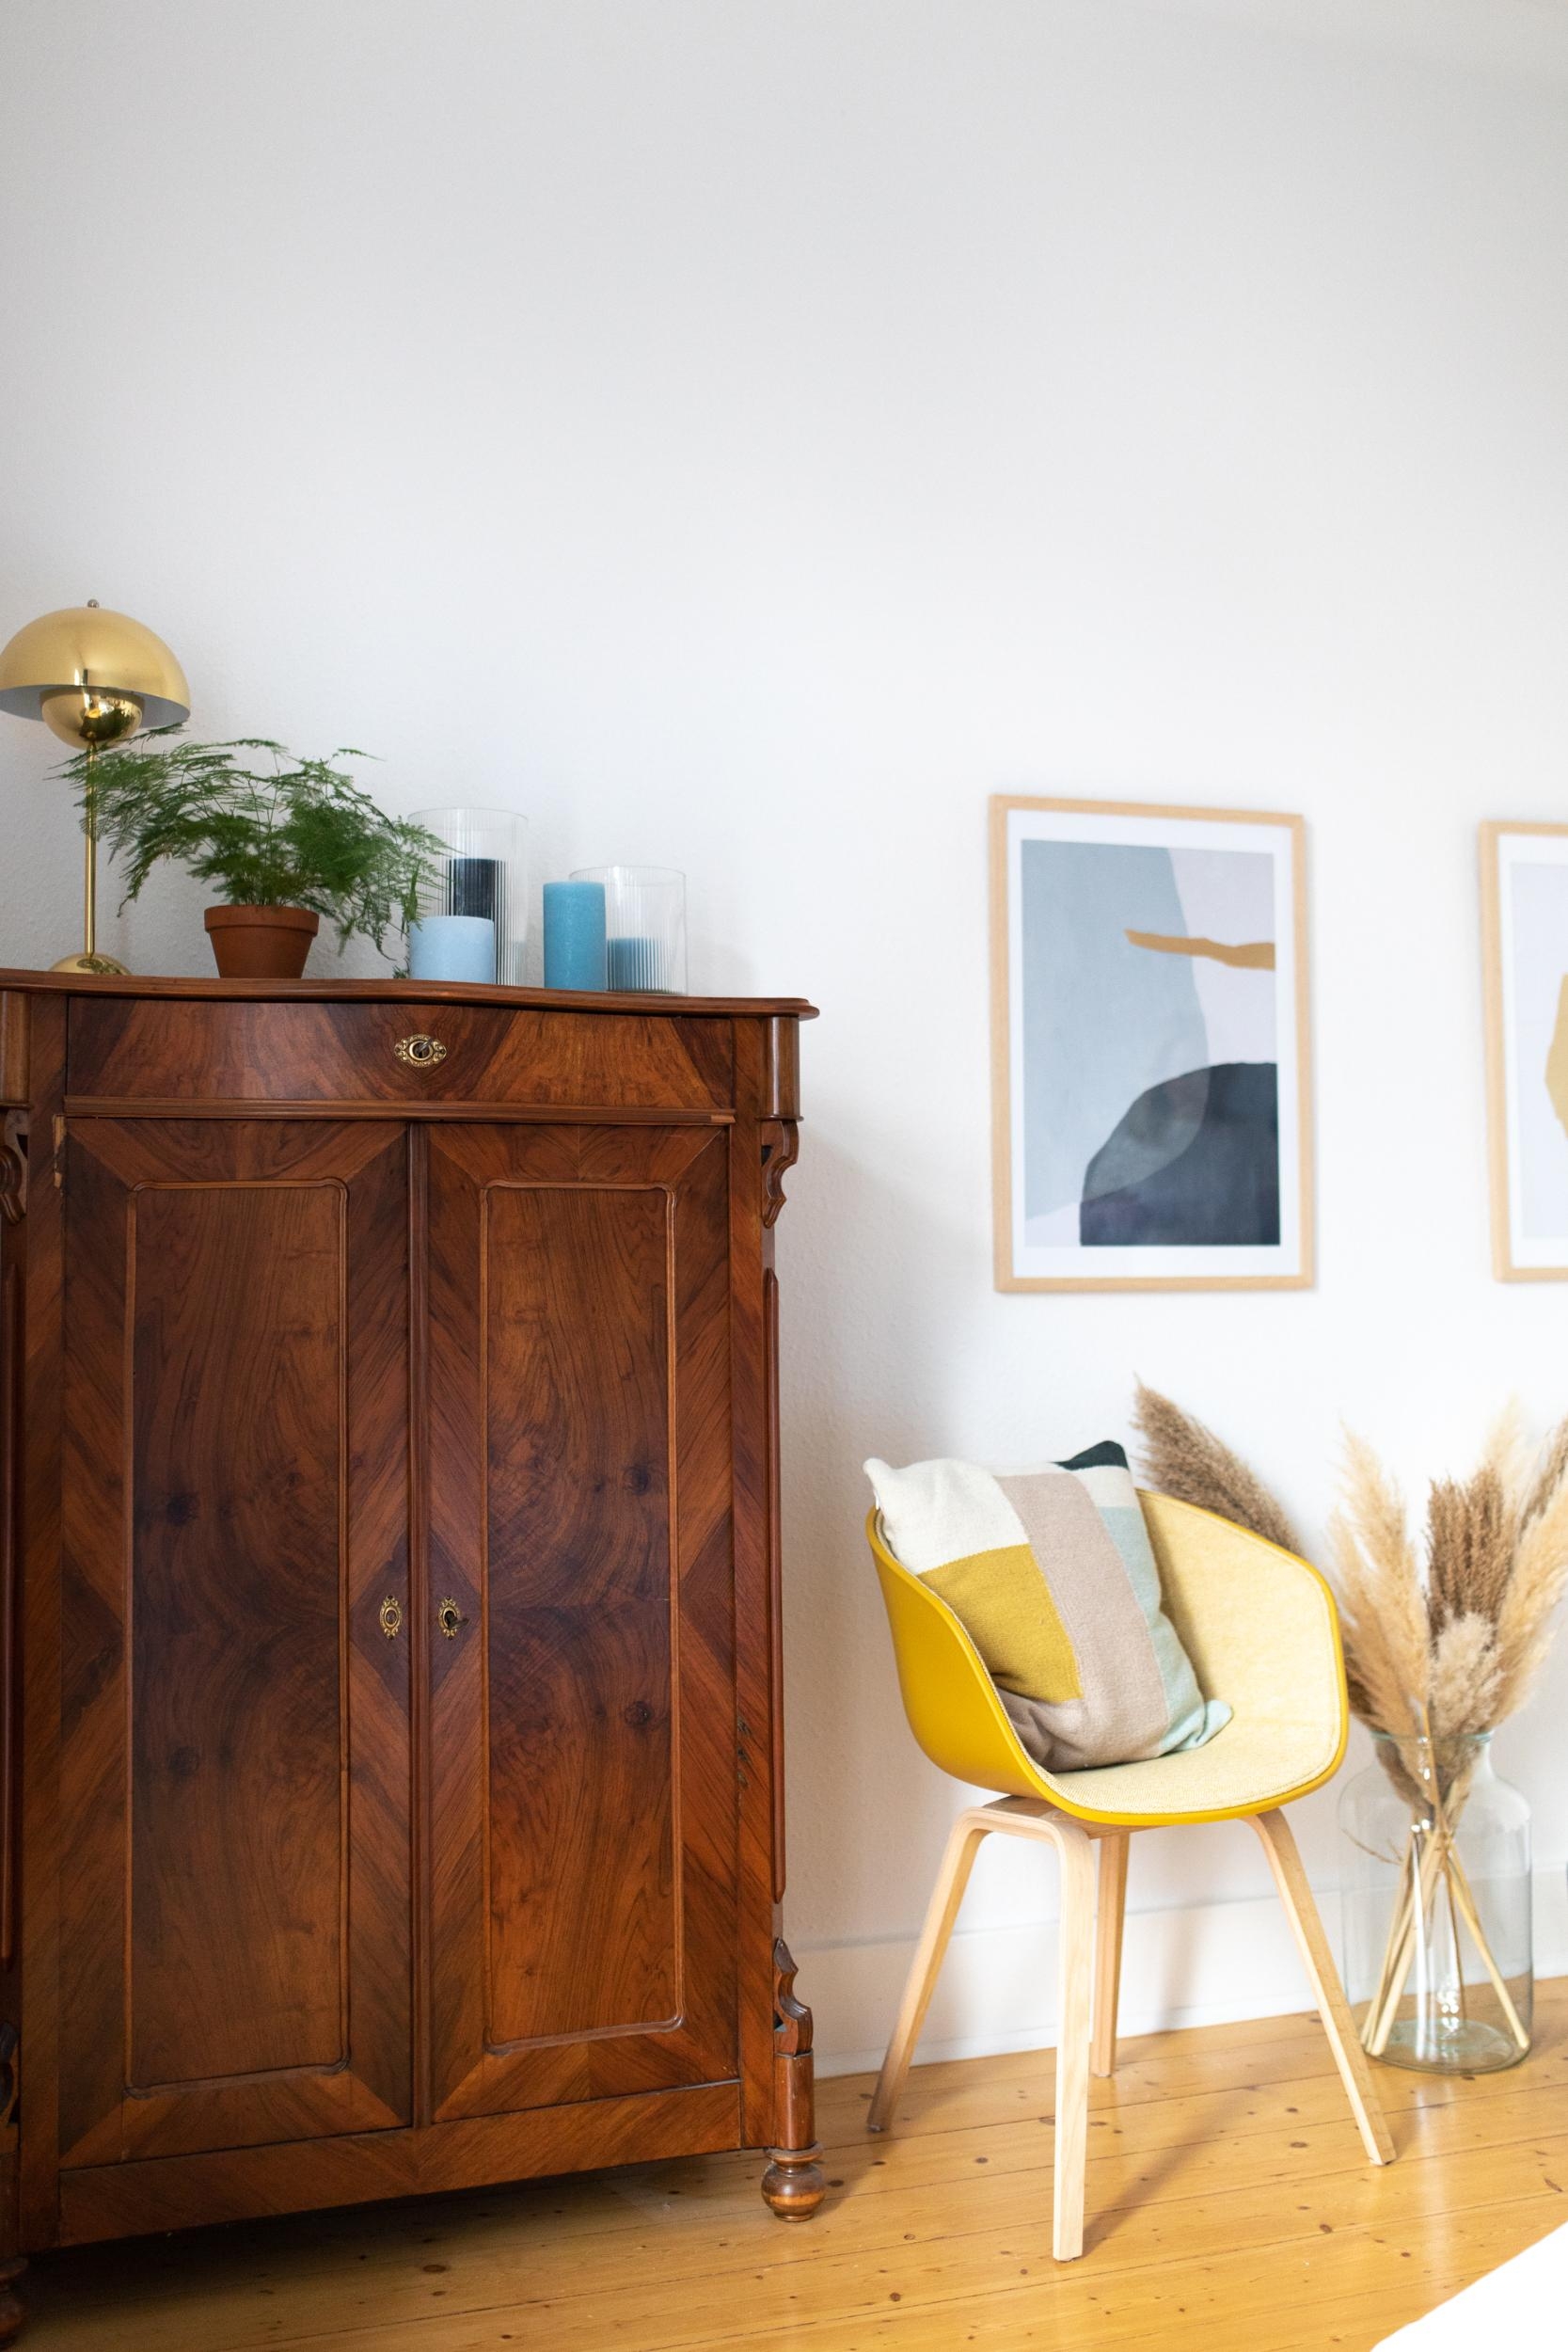 Habt ihr auch Vintage Möbel in eurem Zuhause, die euch an jemand bestimmten erinnern? 

#interior #vintagemöbel 